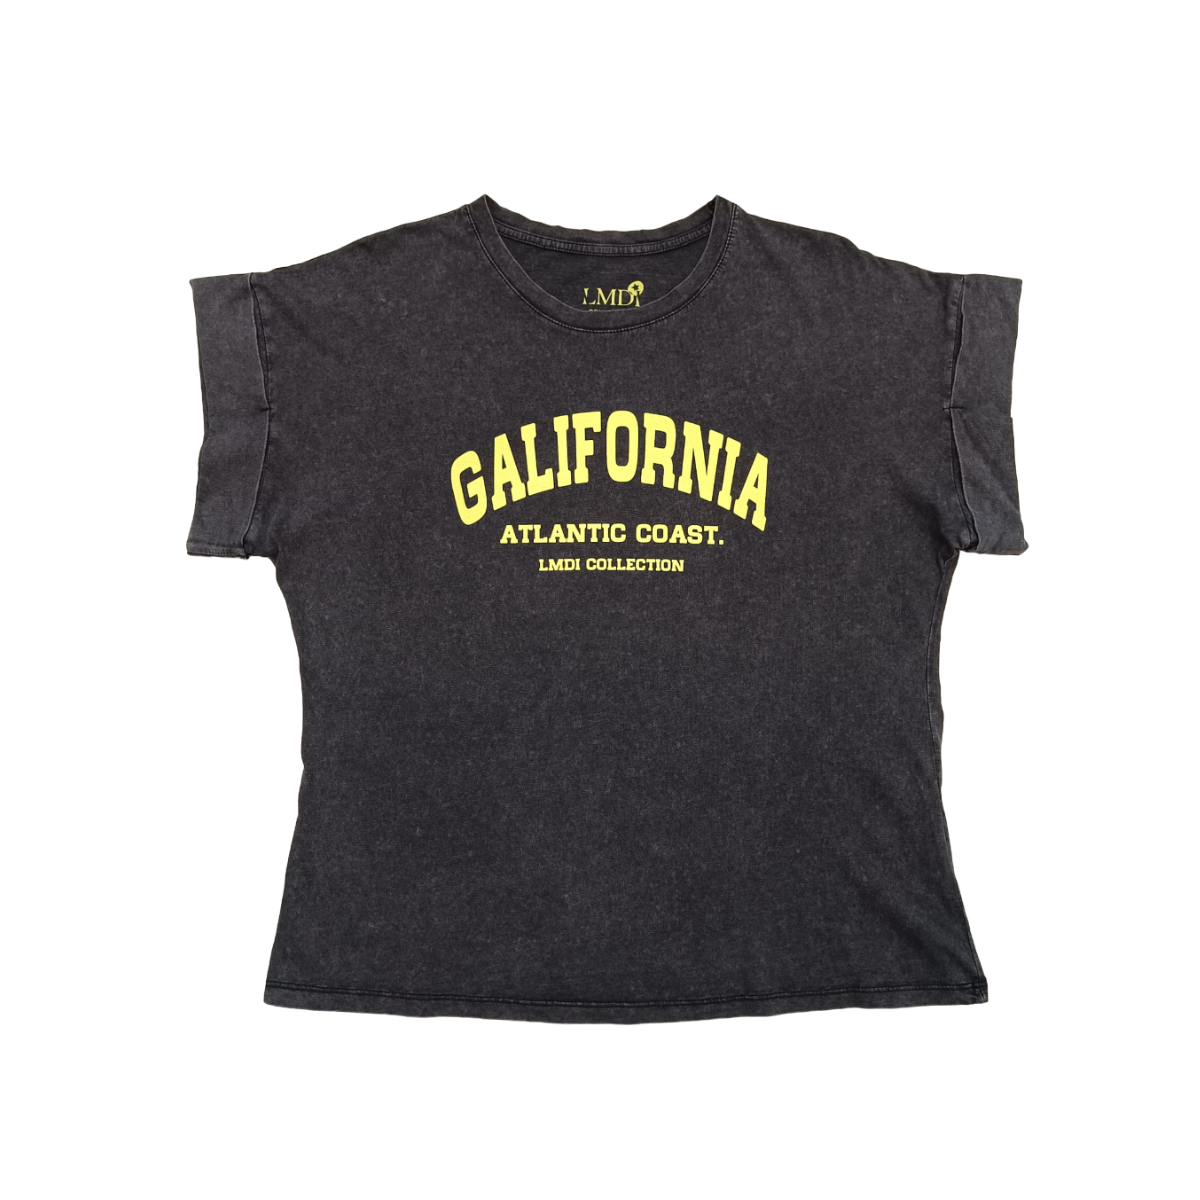 Camiseta Galifornia Atlantic Coast LMDI Collection Amarillo